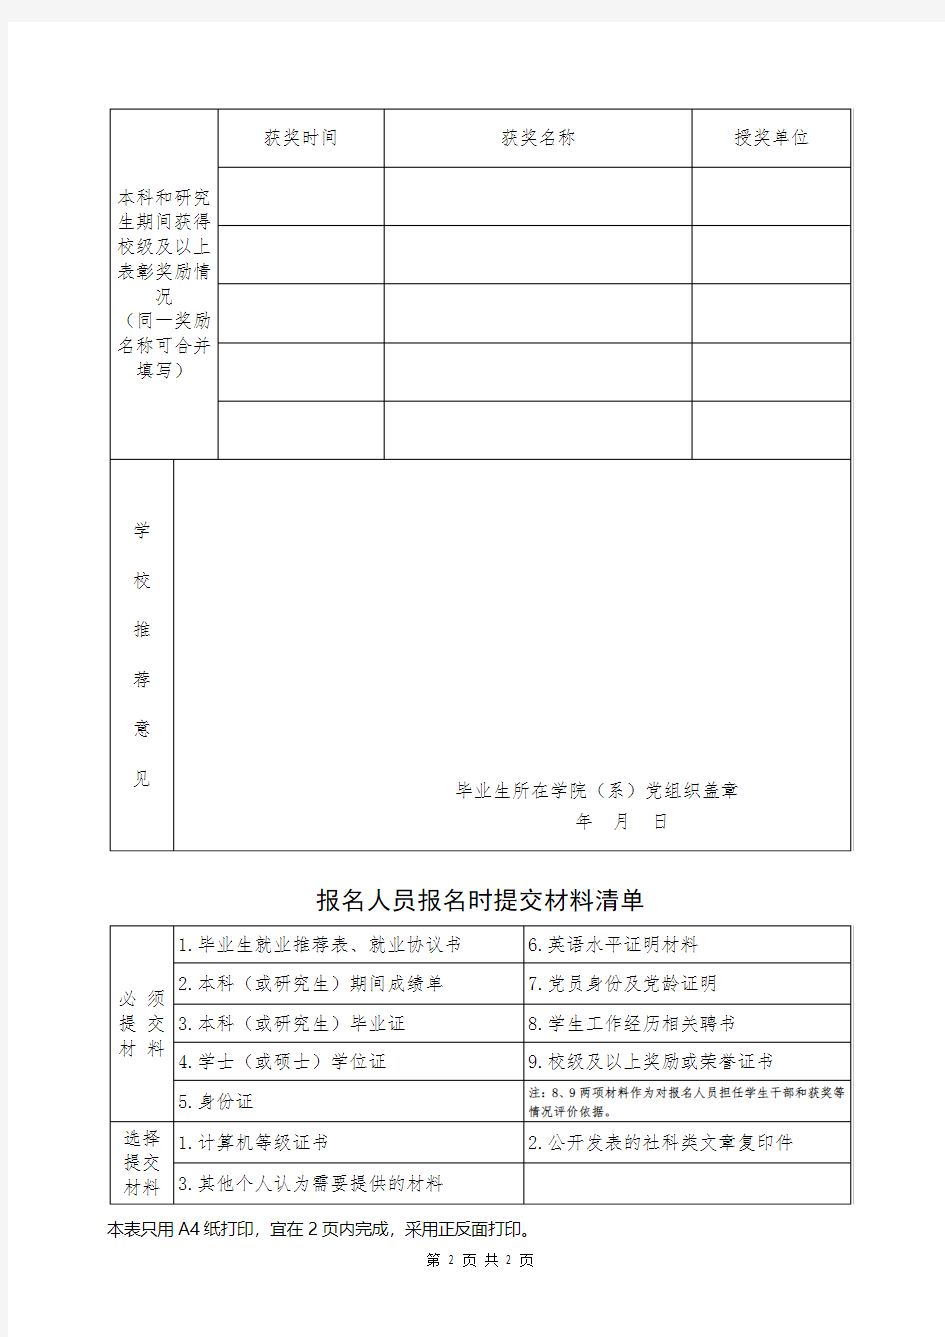 中国矿业大学2018年少数民族专职辅导员岗位应聘报名表